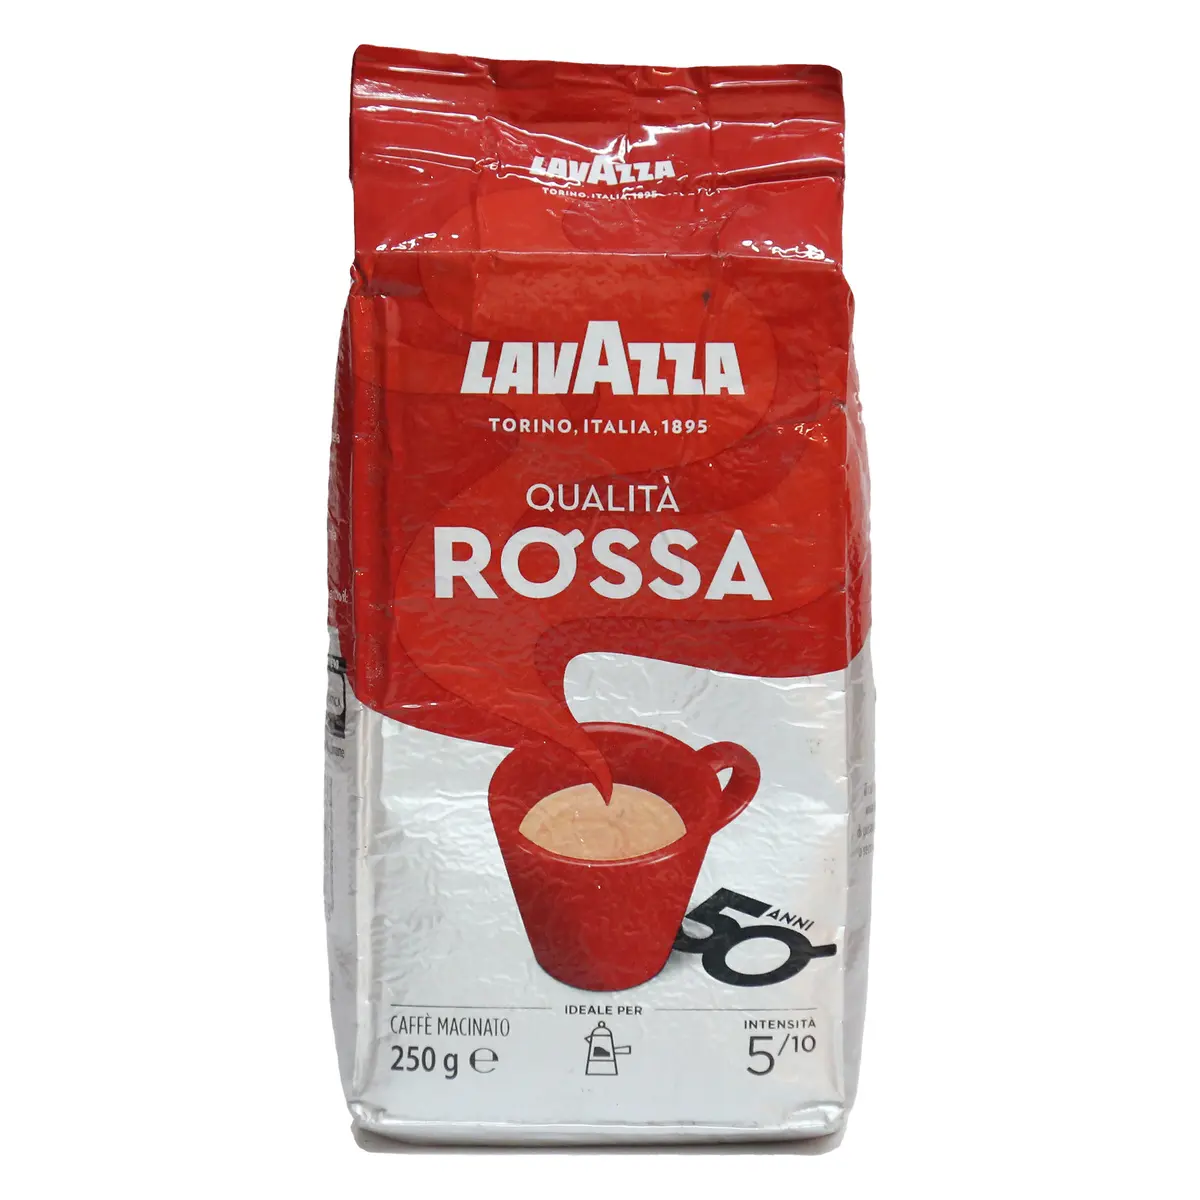 프랑스 원래 Lavazza Qualita Rossa 커피 콩 500g 저렴한 도매 가격에